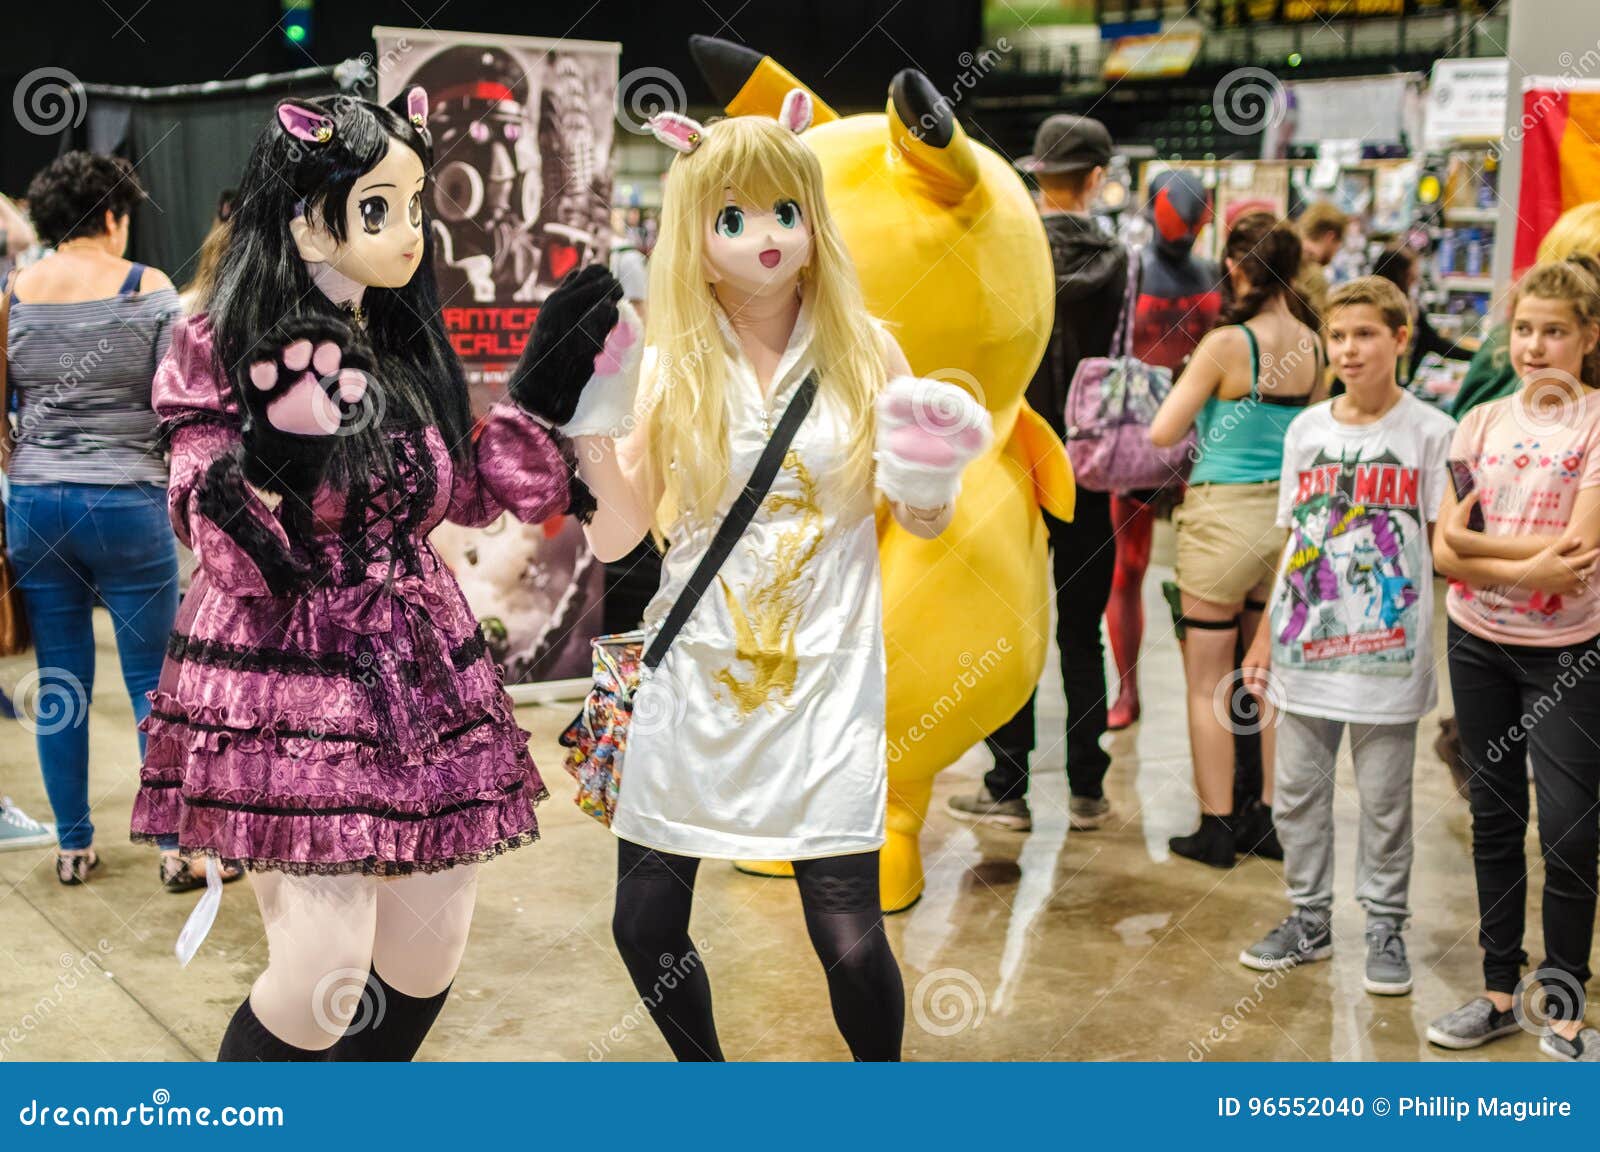 9 Kigurumi ideas  cosplay anime dolls female mask